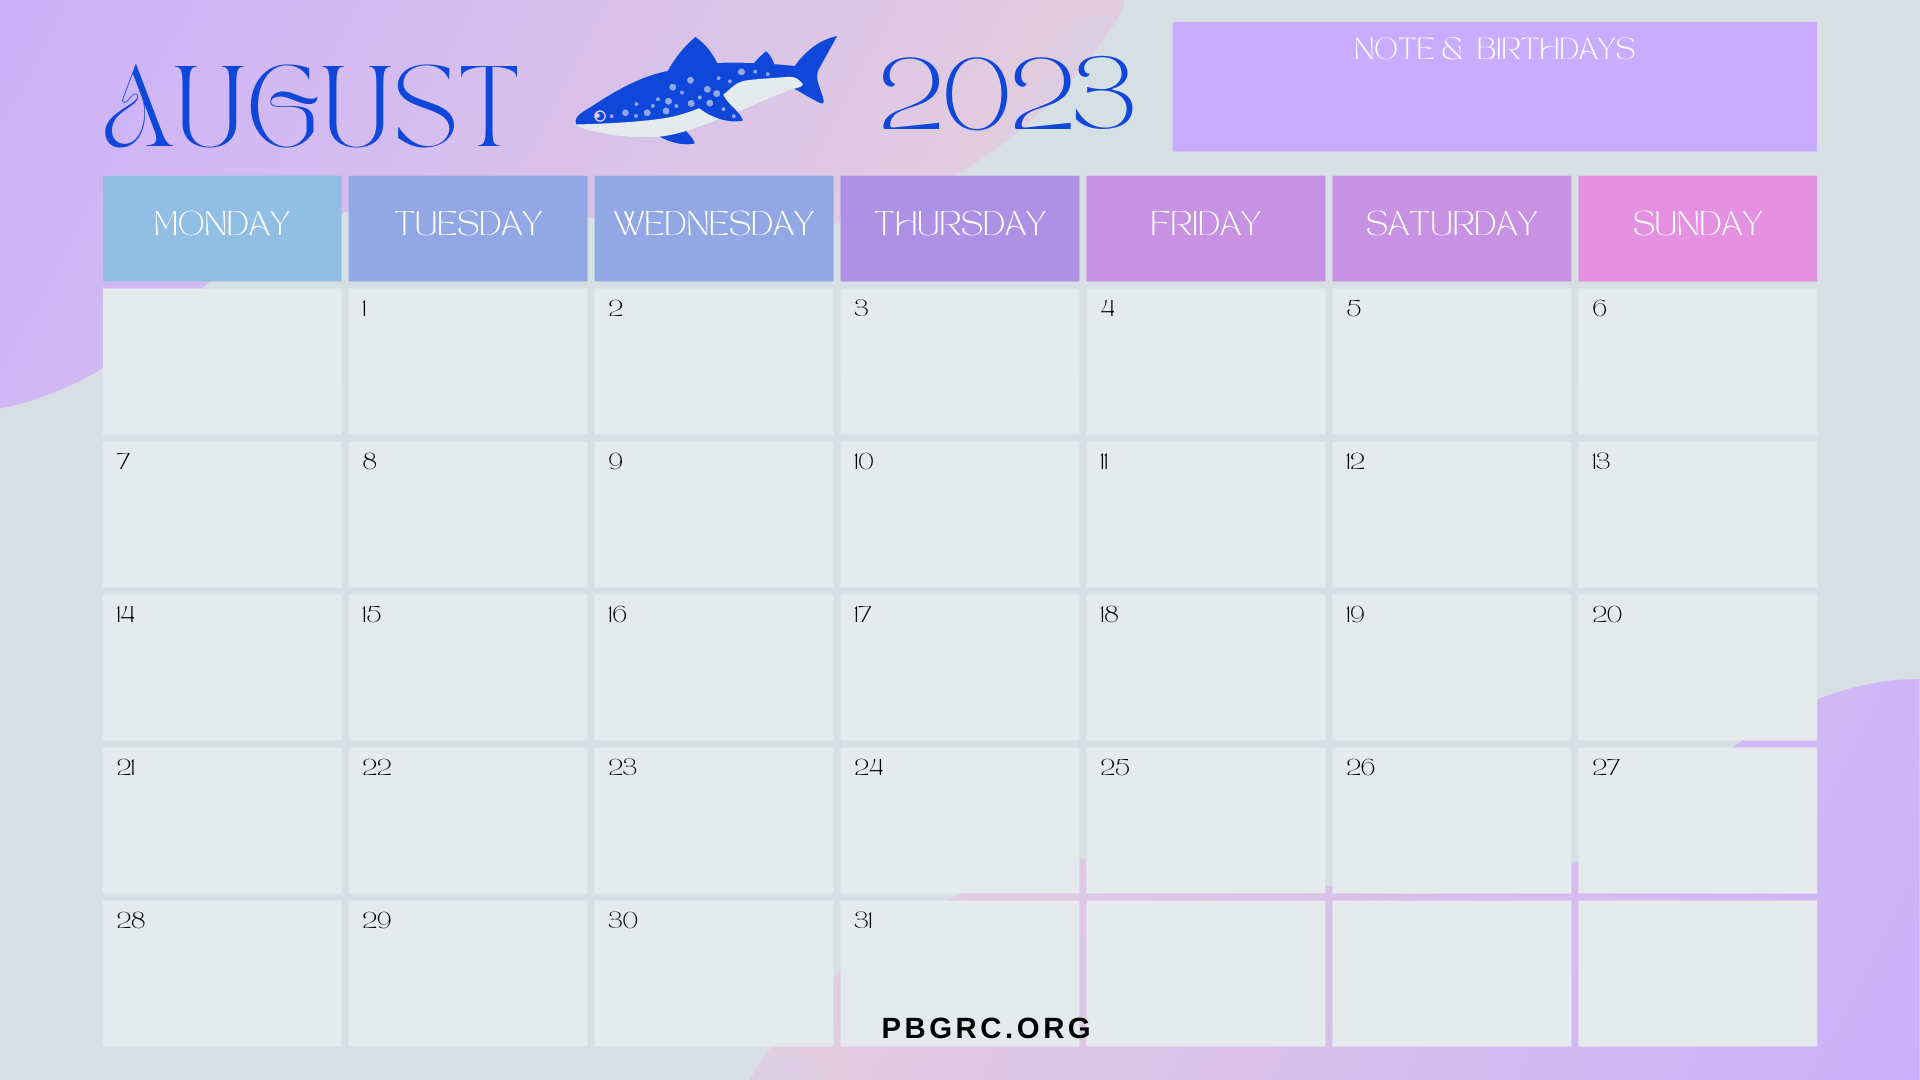 August 2023 Editable Calendar